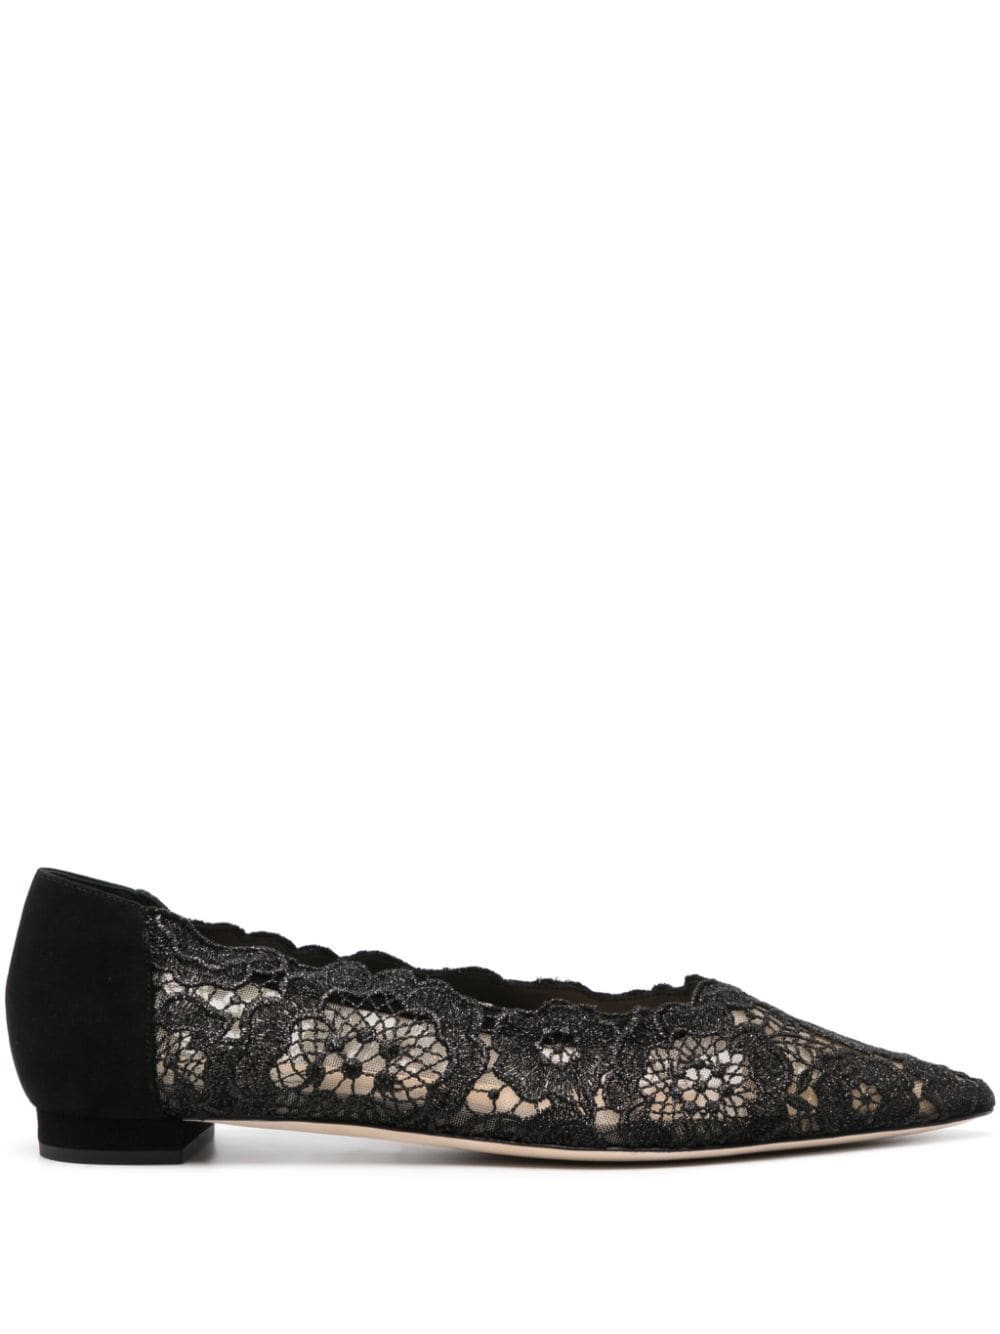 Arteana floral-lace ballerina shoes - Black von Arteana